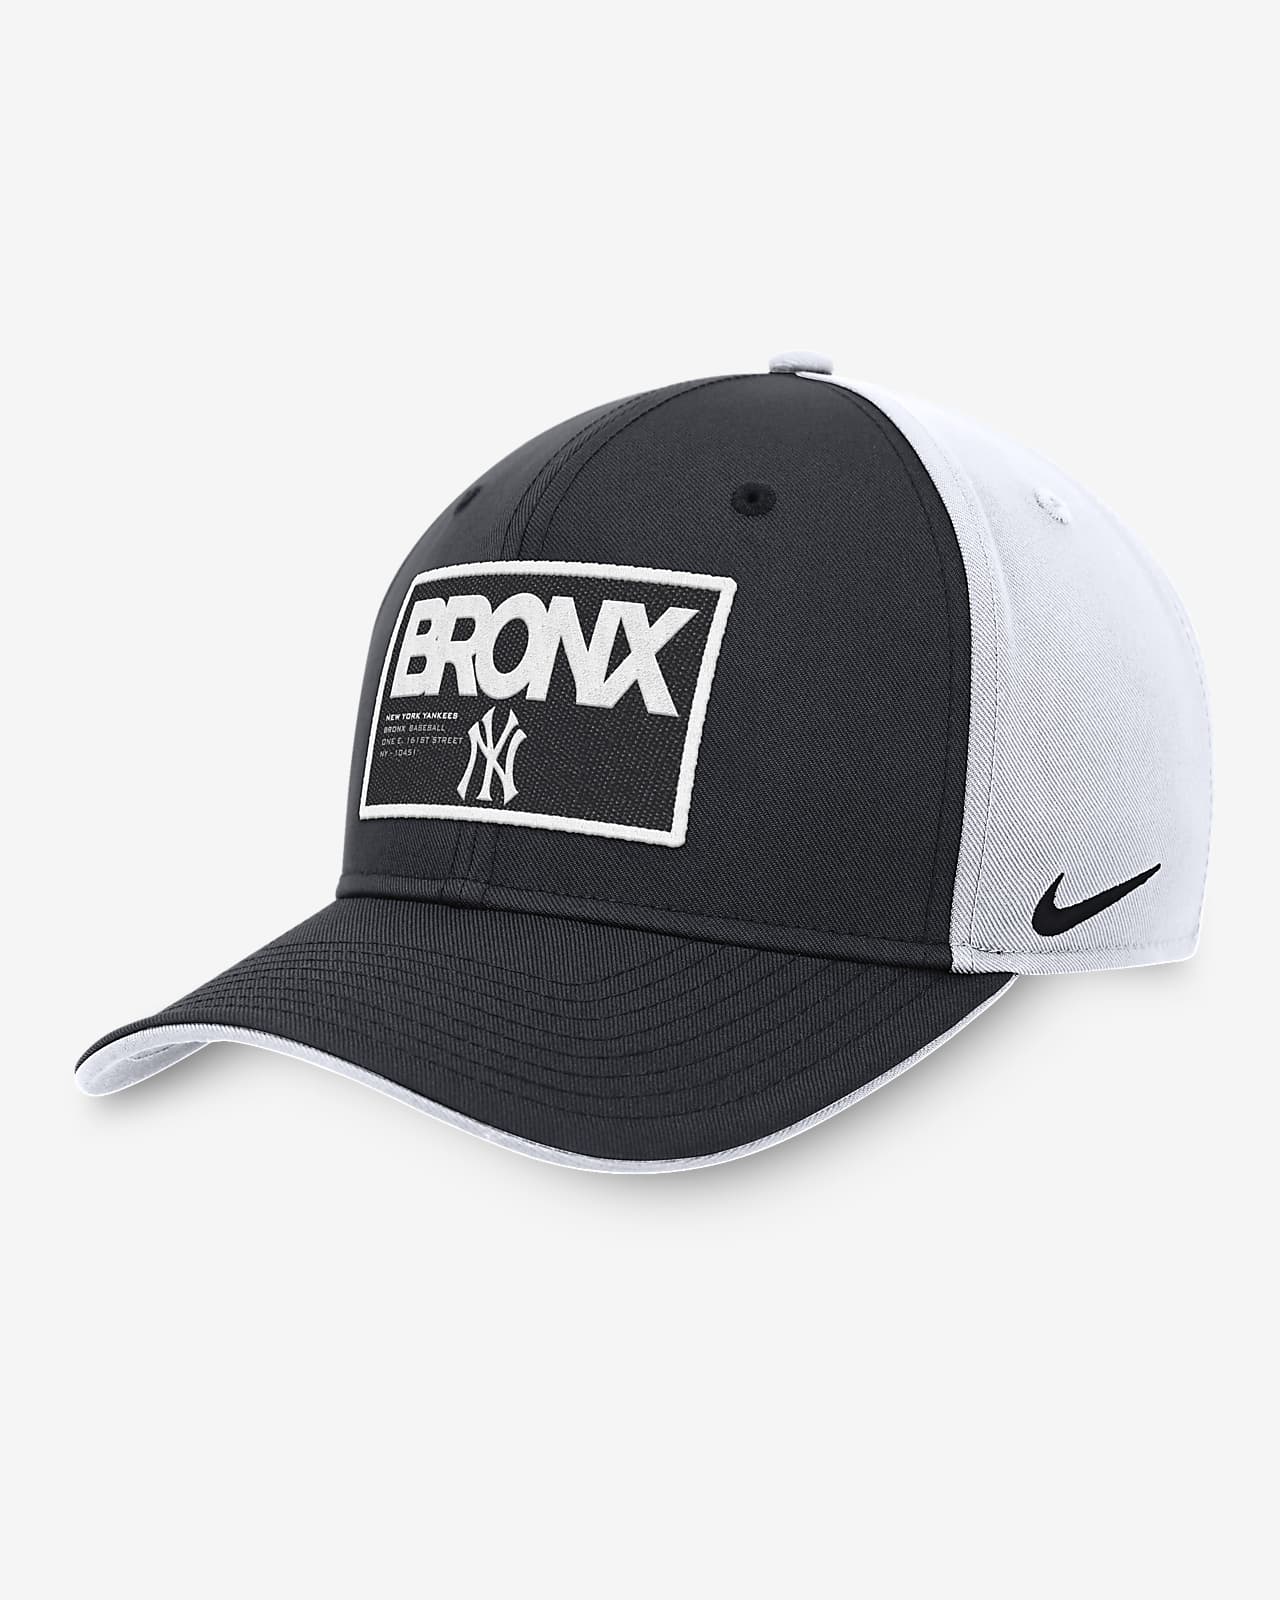 New York Yankees Classic99 Color Block Men's Nike MLB Adjustable Hat.